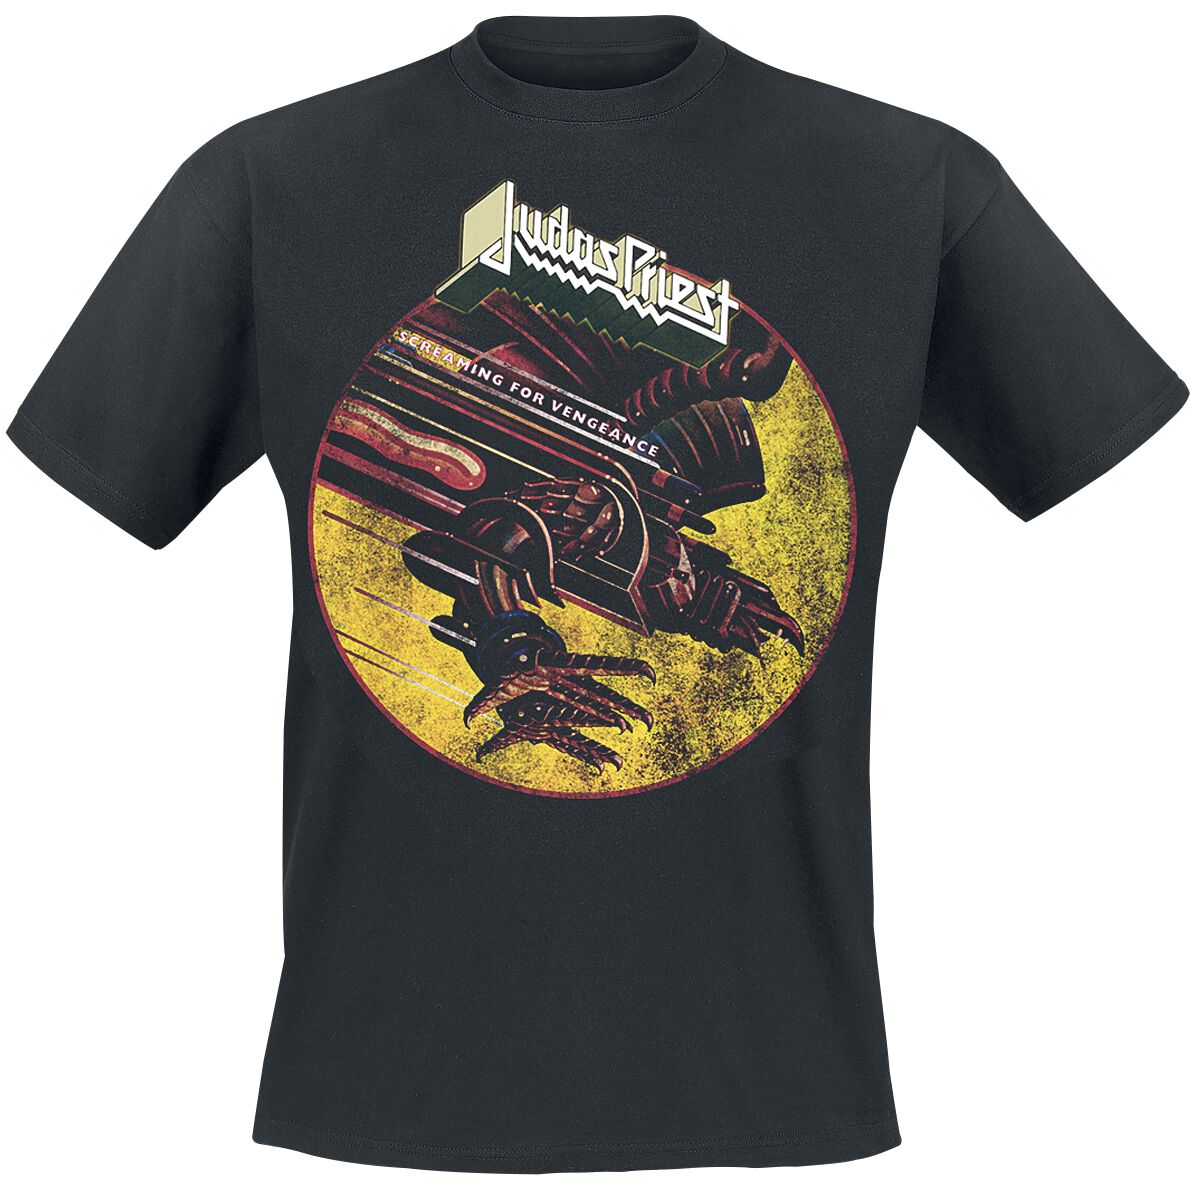 Judas Priest T-Shirt - SFV Distressed - M bis XXL - für Männer - Größe XL - schwarz  - Lizenziertes Merchandise!